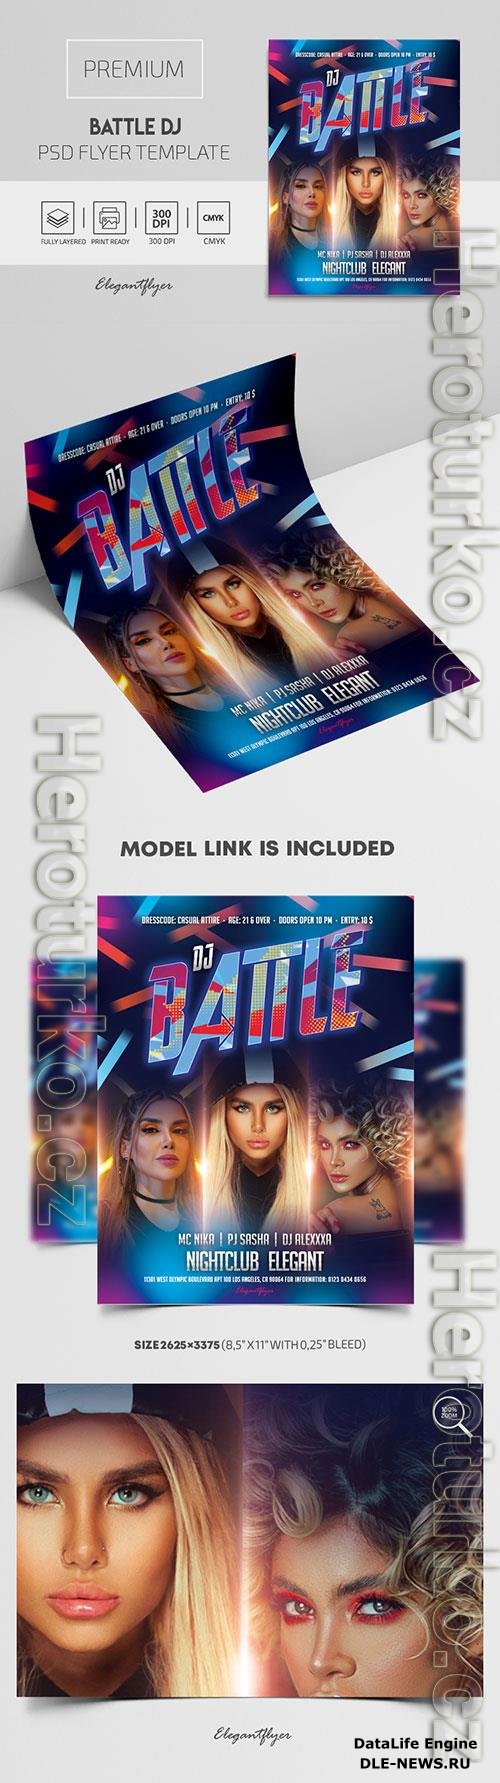 Battle DJ Premium PSD Flyer Template